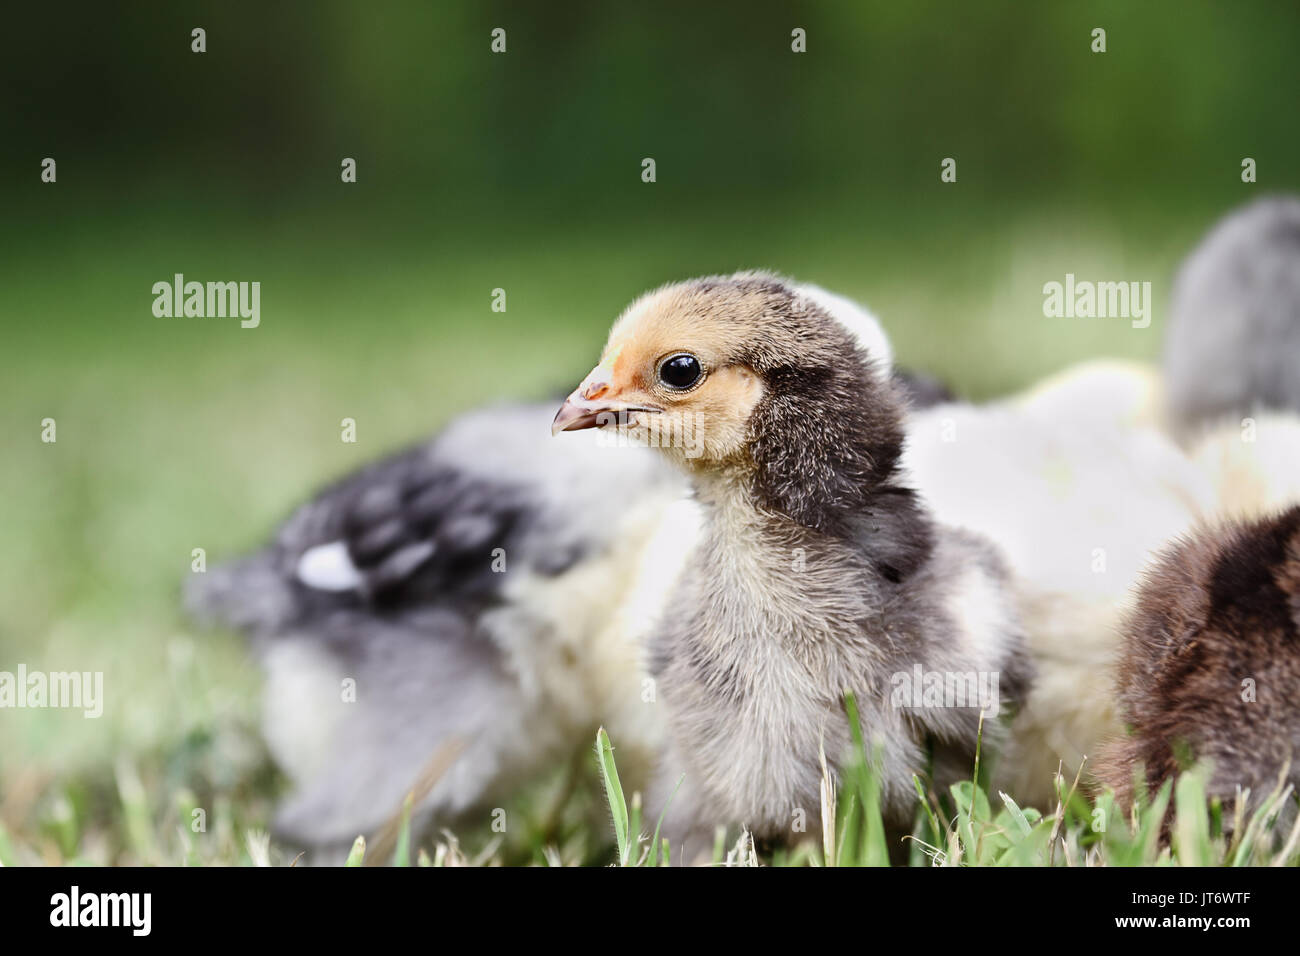 Baby Buff Brahma Küken sich angefangen mit anderen Mixed Chicks draußen im Gras. Extrem flache Tiefenschärfe mit selektiven Fokus auf dem Brahma fac Stockfoto